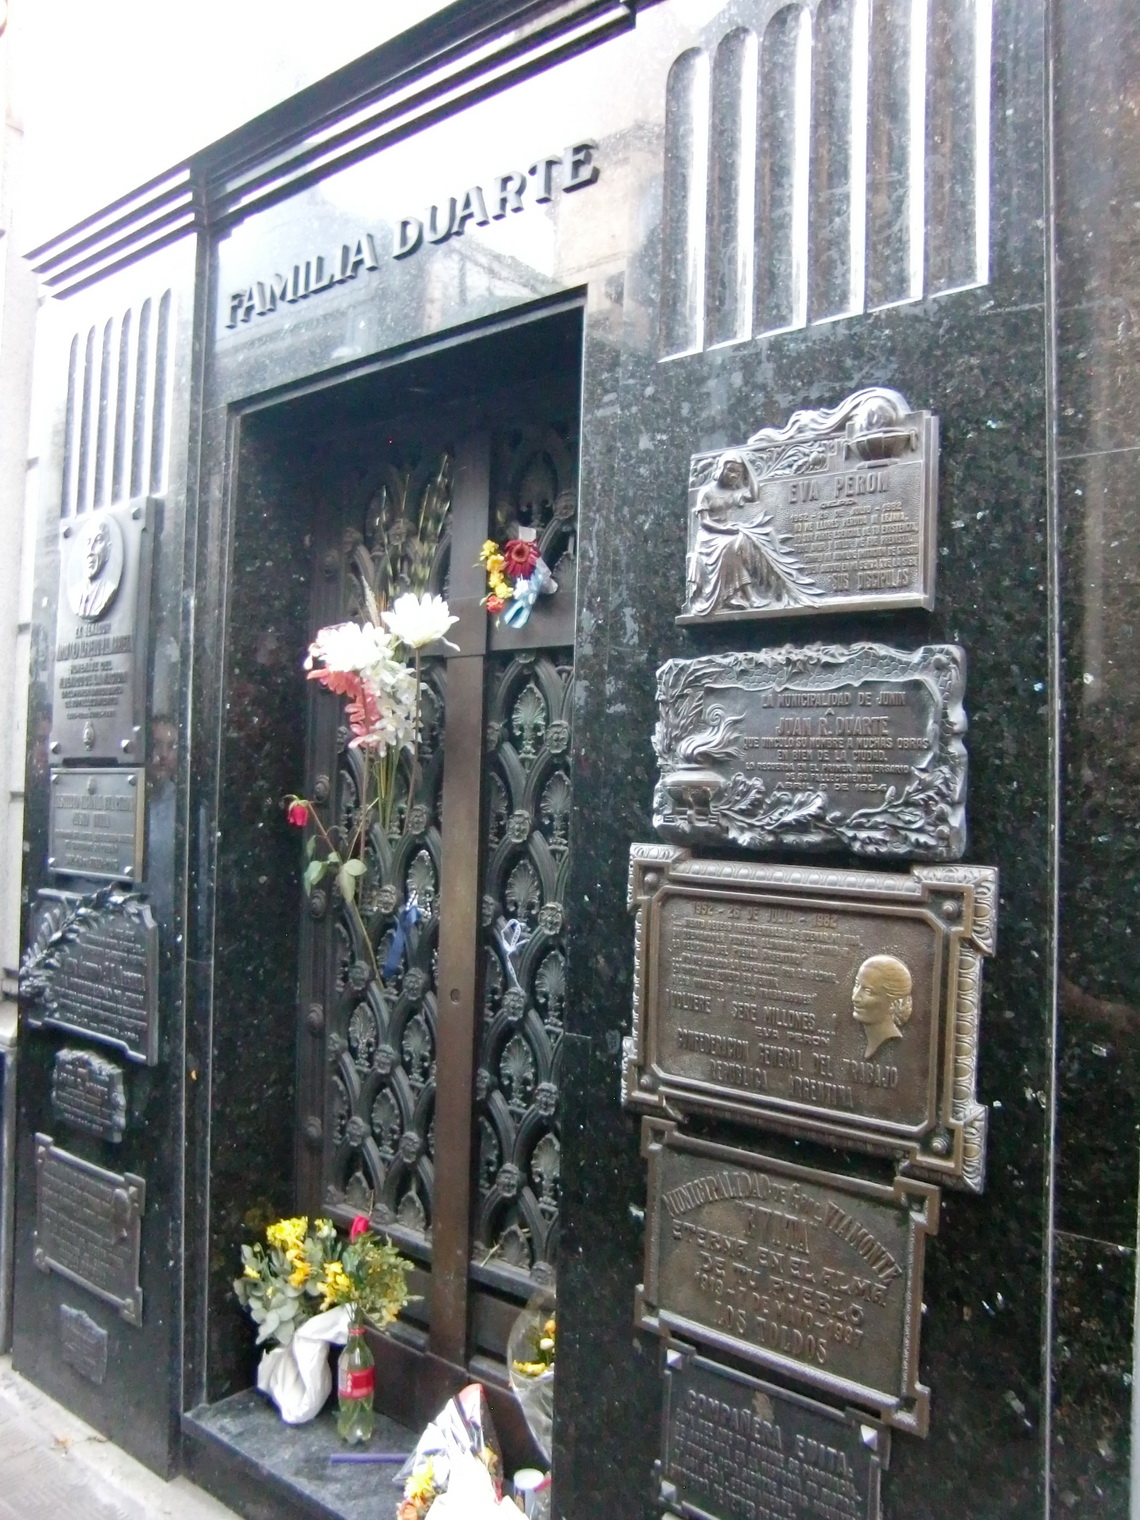 Tomb of the family Duarte - Evita is a born Duarte